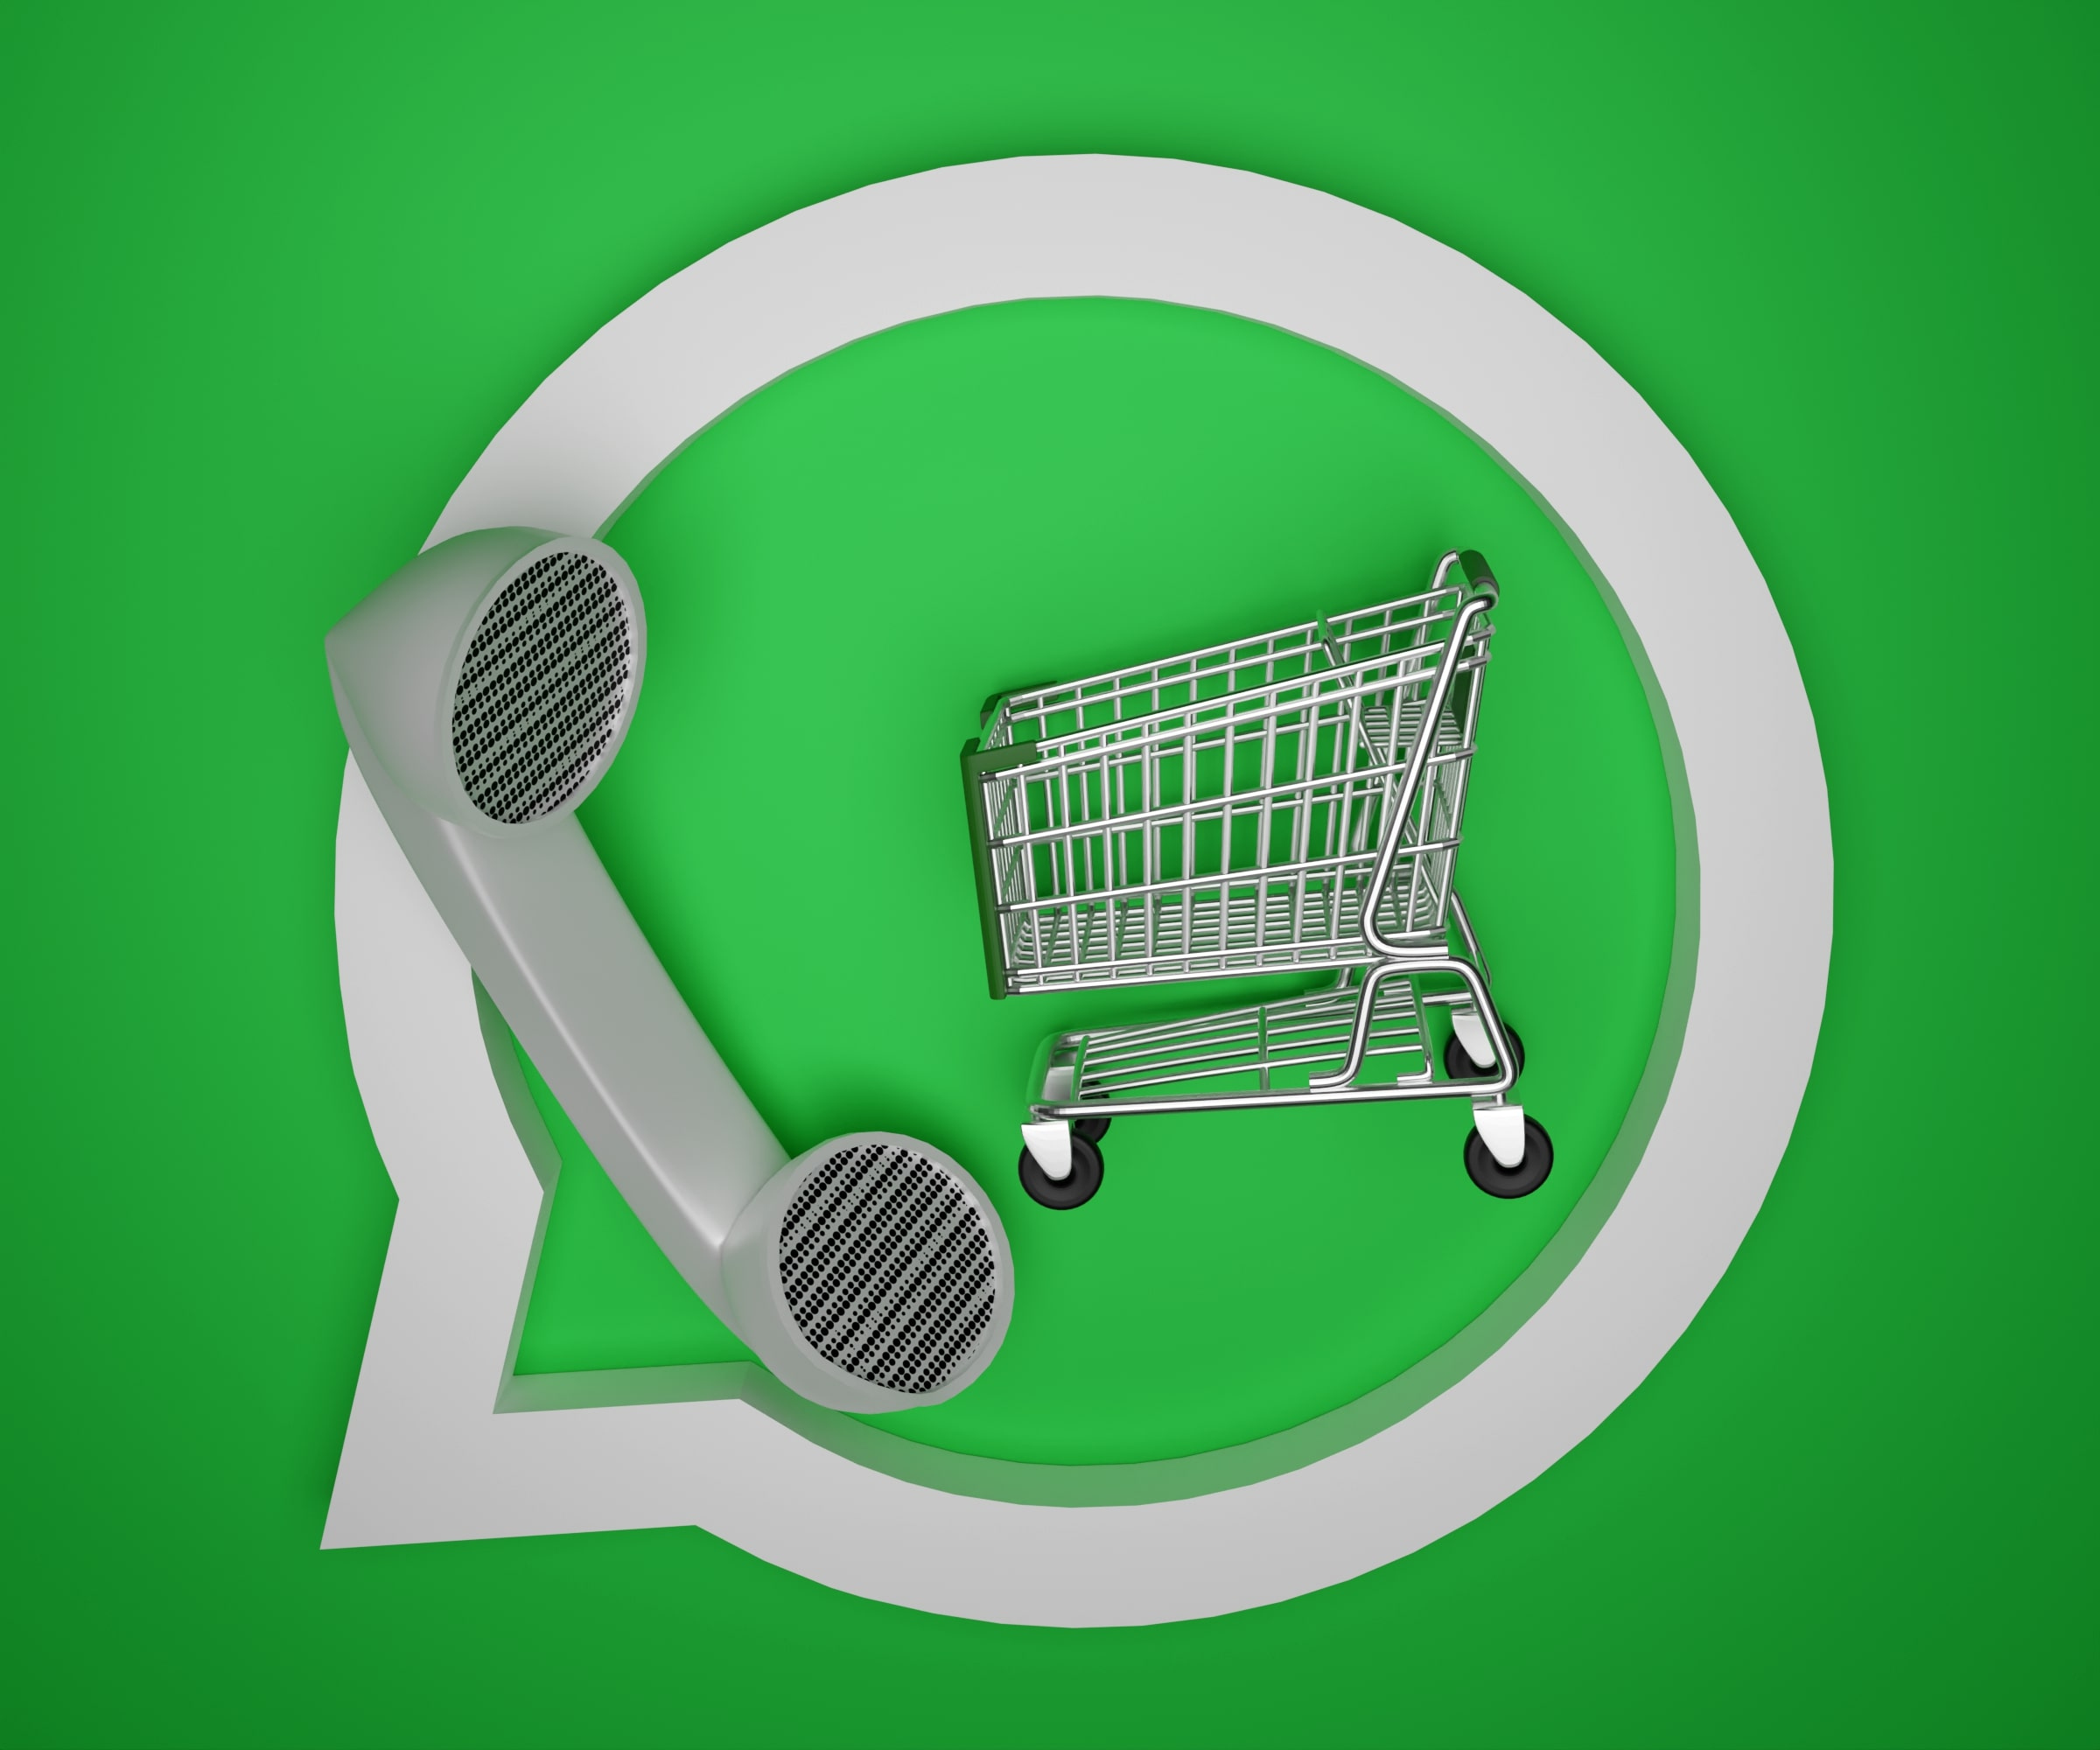 Vendas no WhatsApp para e-commerce: usos corretos e erros comuns